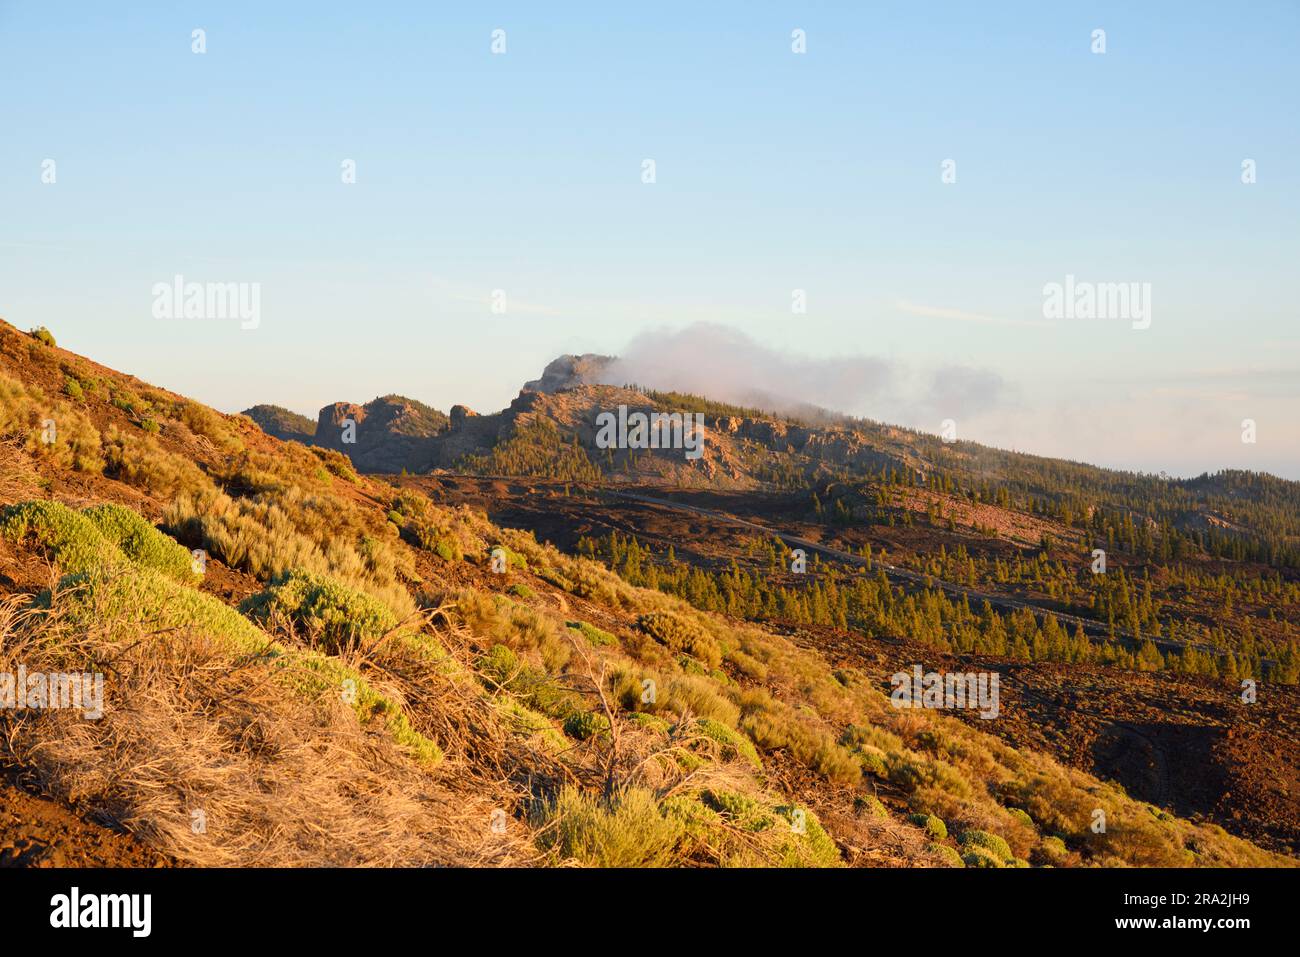 España, Islas Canarias, Tenerife, Parque Nacional del Teide declarado Patrimonio de la Humanidad por la UNESCO, carretera TF 21 al atardecer al pie del volcán Teide, la cumbre más alta de España que culmina a 3718 metros Foto de stock